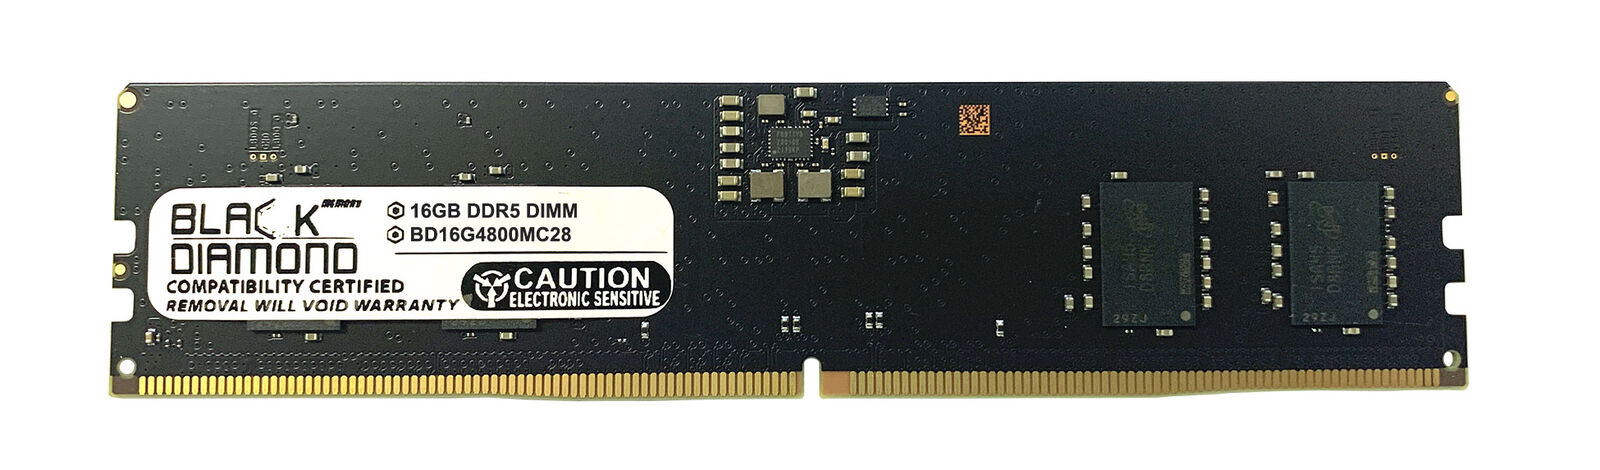 16GB Memory Gigabyte Motherboards,Z690 AORUS ELITE AX (rev. 1.0)